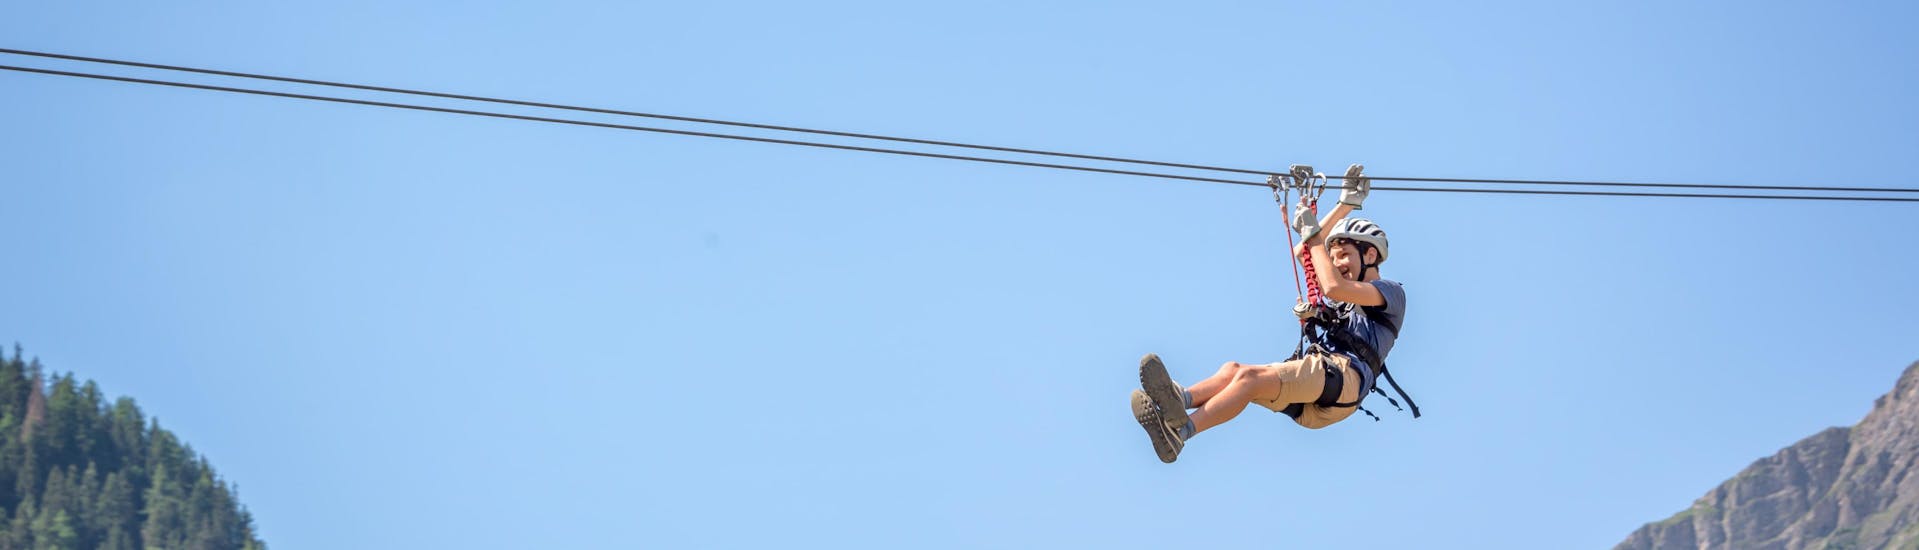 Un chico se tira en tirolina en Ciudad del Cabo, un lugar muy popular para hacer zip line.